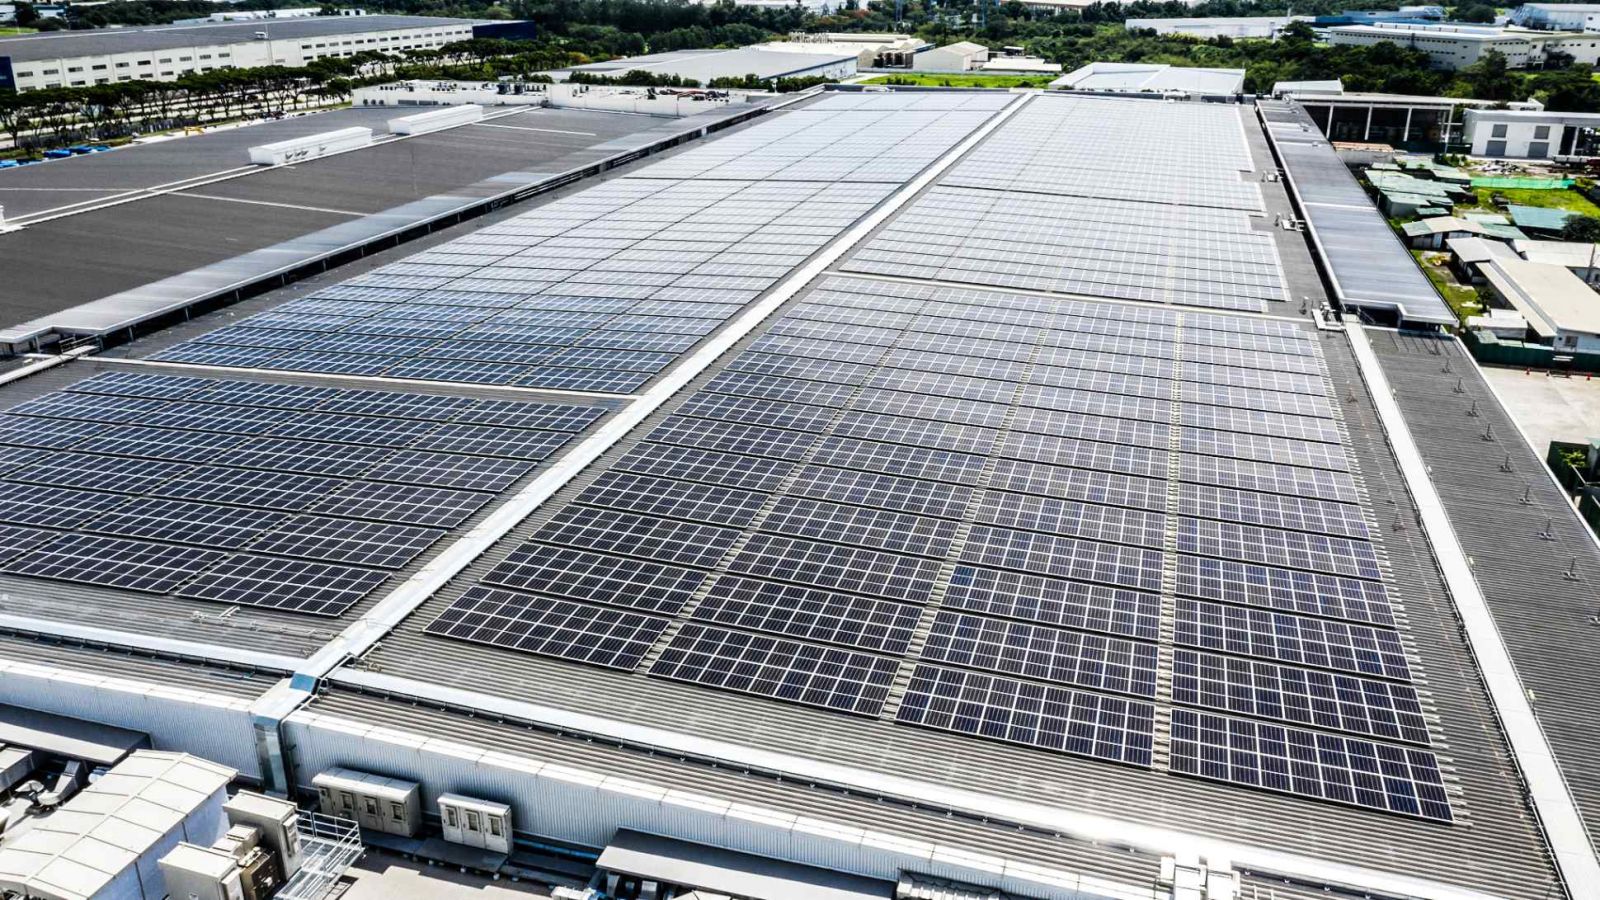 Nhà máy Murata ở Philippines này là cơ sở sản xuất thiết bị điện tử đầu tiên ở nước ngoài được cung cấp năng lượng hoàn toàn bằng năng lượng mặt trời trên mái nhà. (Ảnh: Murata)